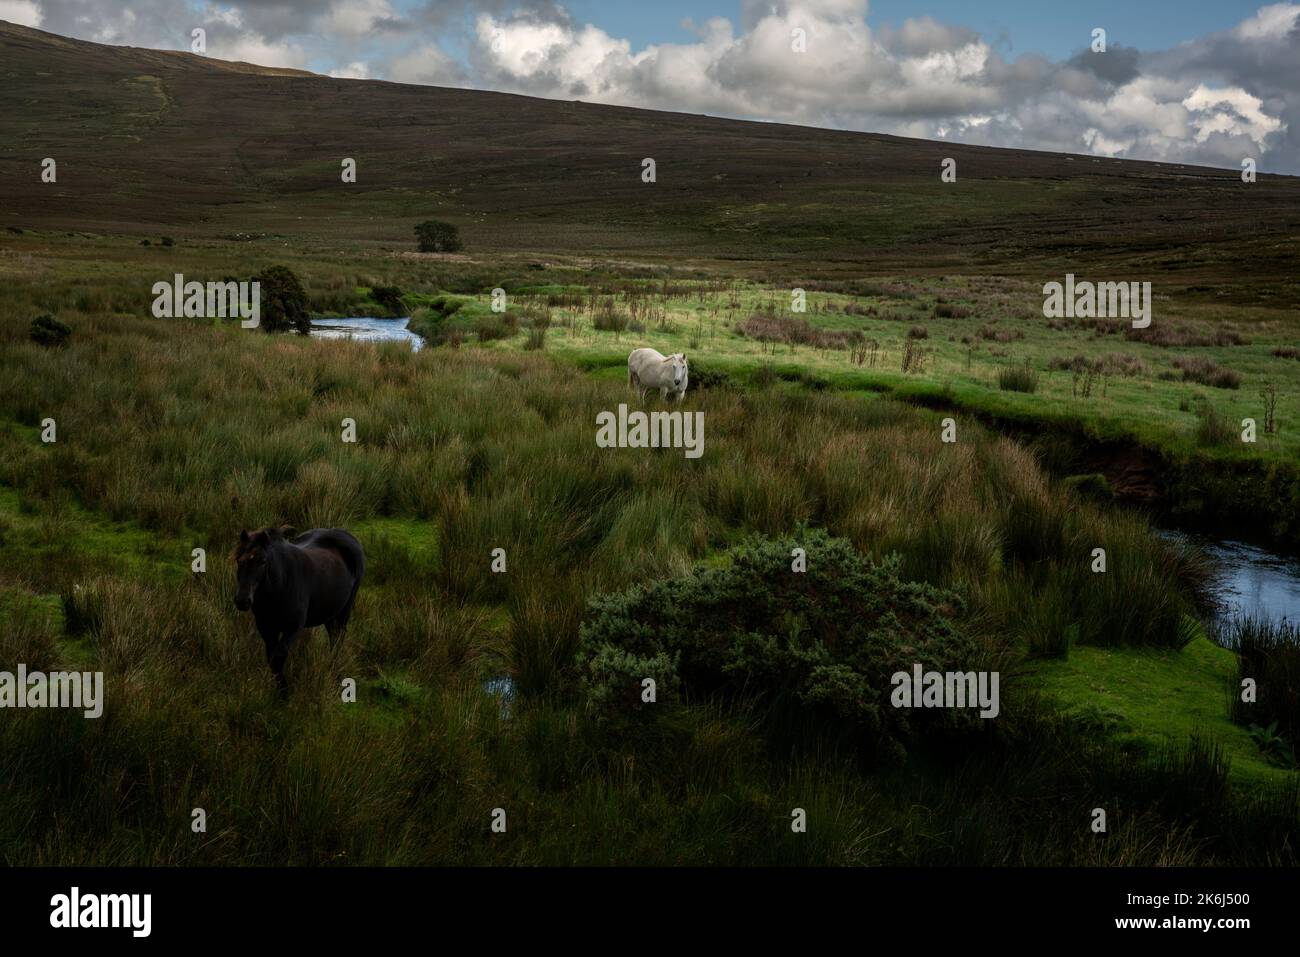 Paître des chevaux dans le paysage impressionnant des vastes et lointaines tourbières à la limite du parc national de Wild Nephin, co Mayo, Irlande. Banque D'Images